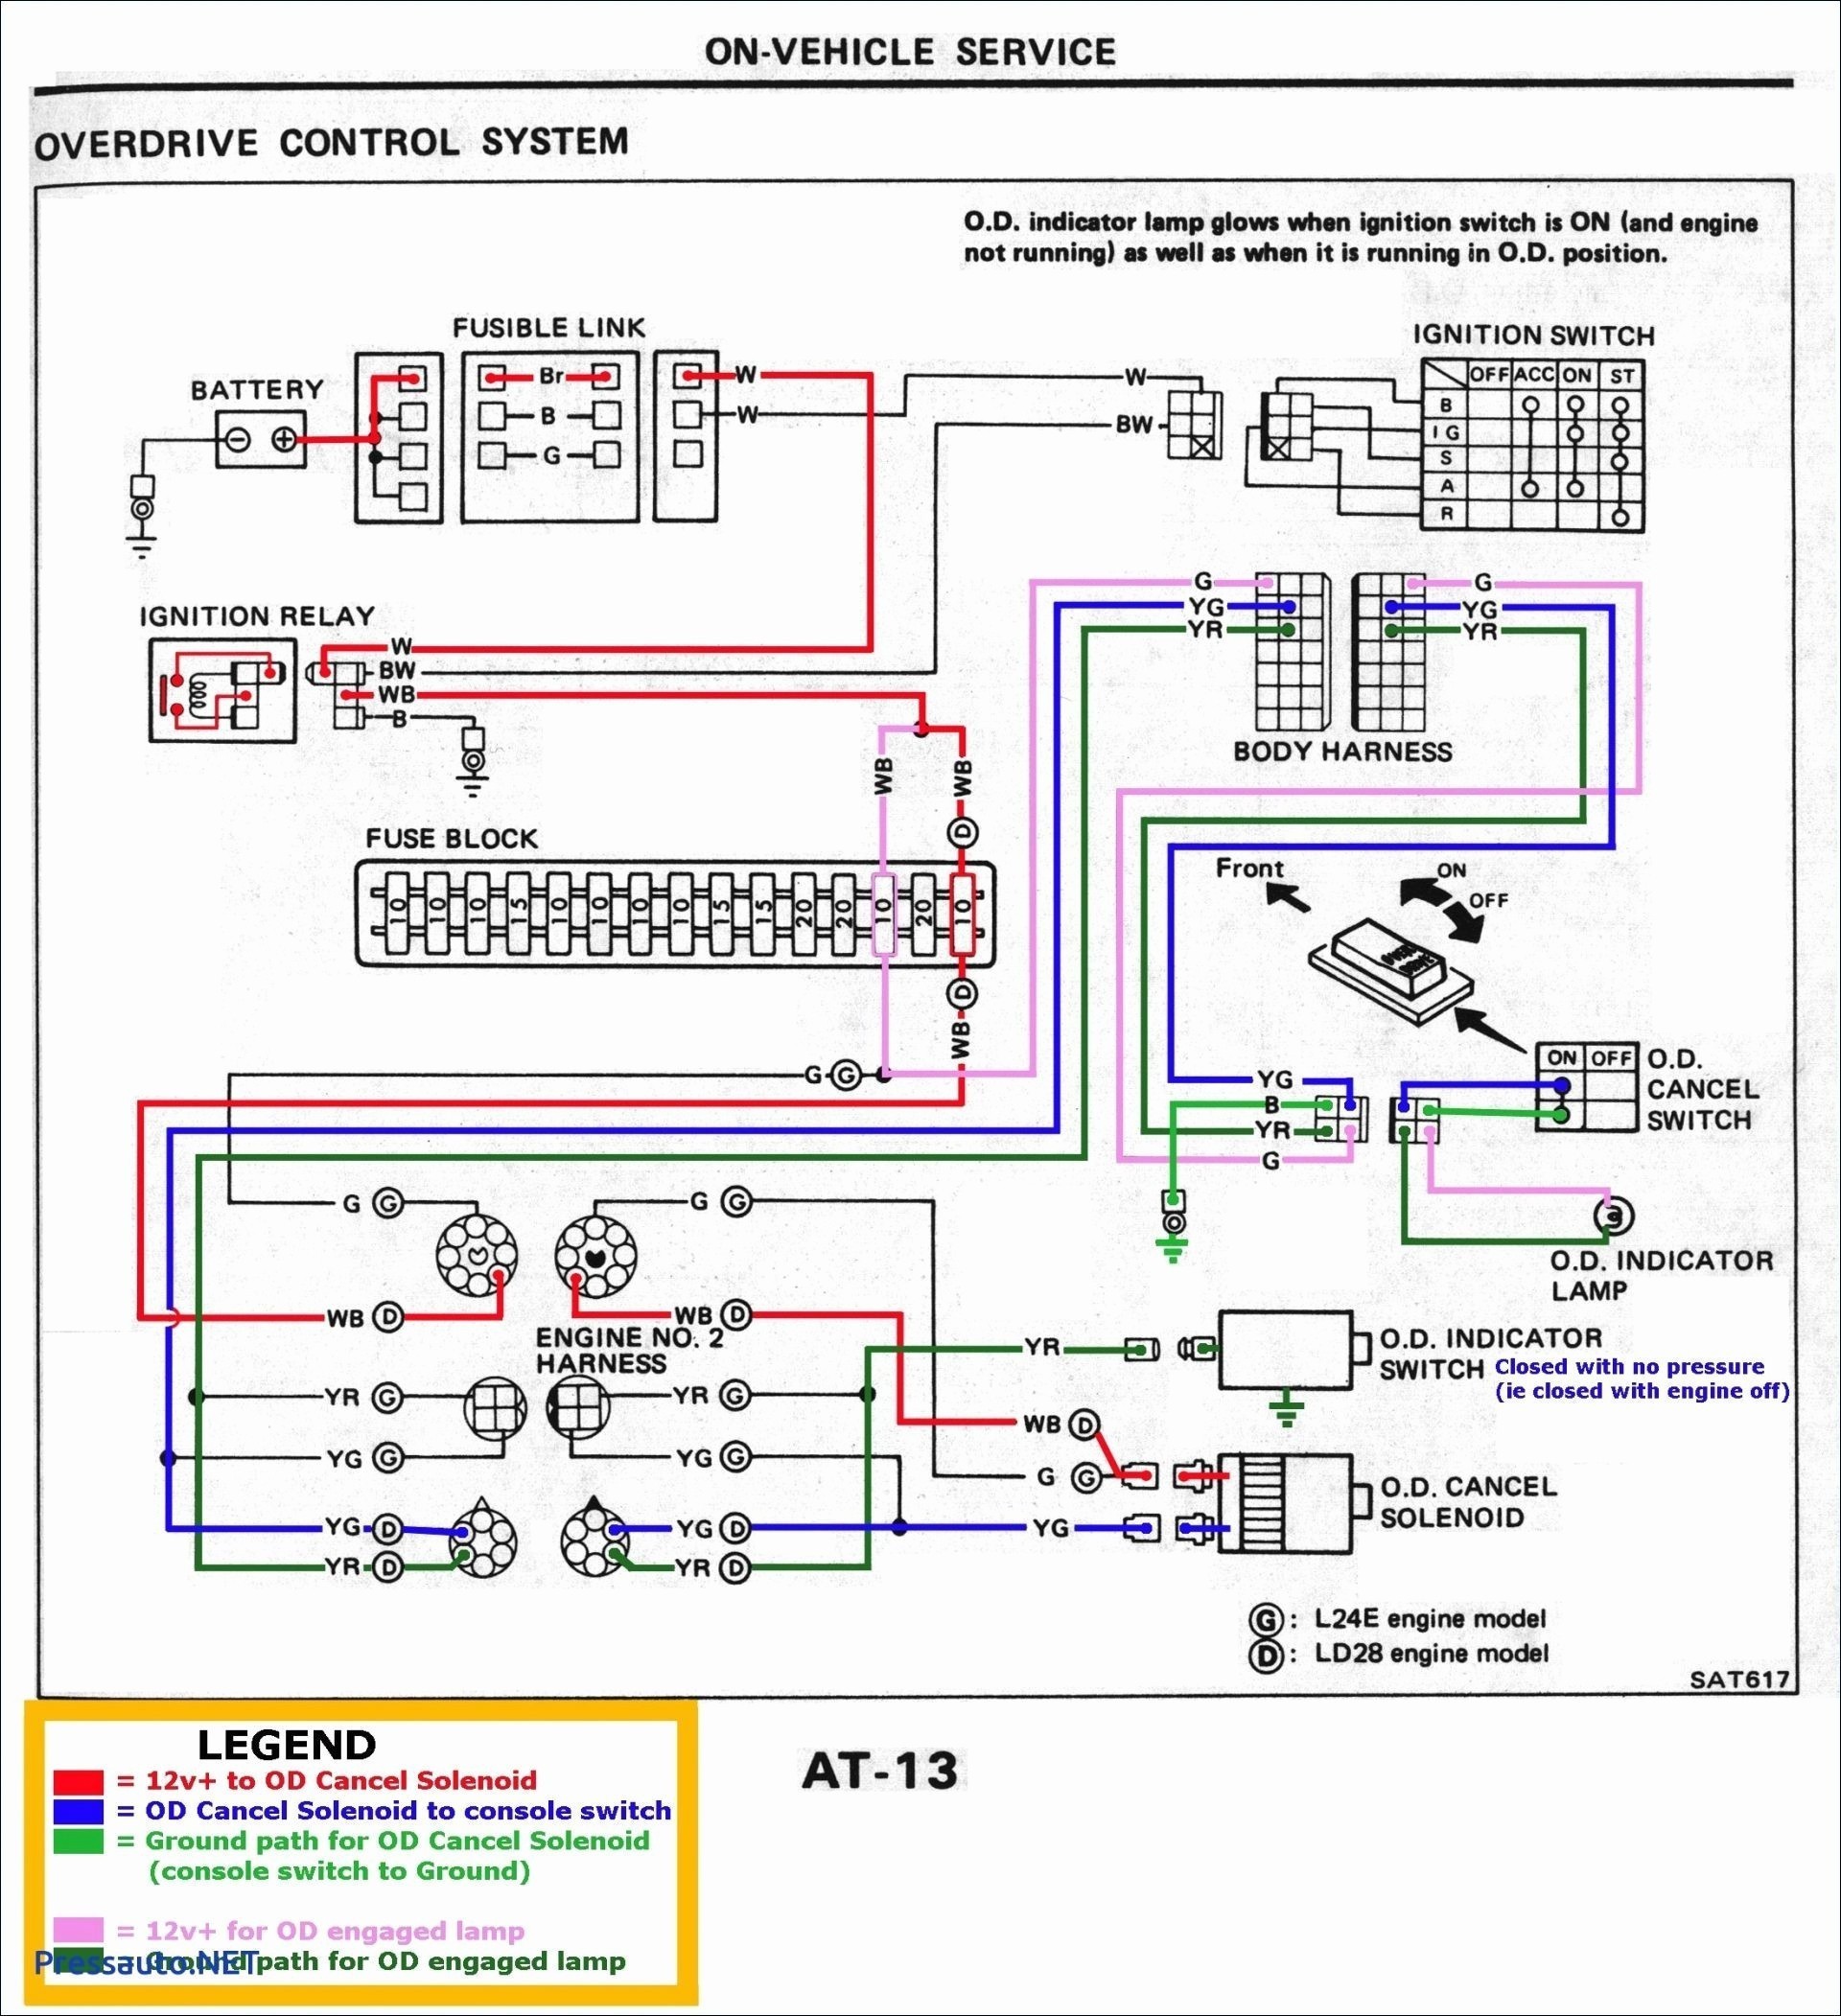 Furnace Blower Motor Wiring Diagram Suburban Rv Furnace Sf 35f Wiring Diagram Wiring Schematics Diagram Of Furnace Blower Motor Wiring Diagram